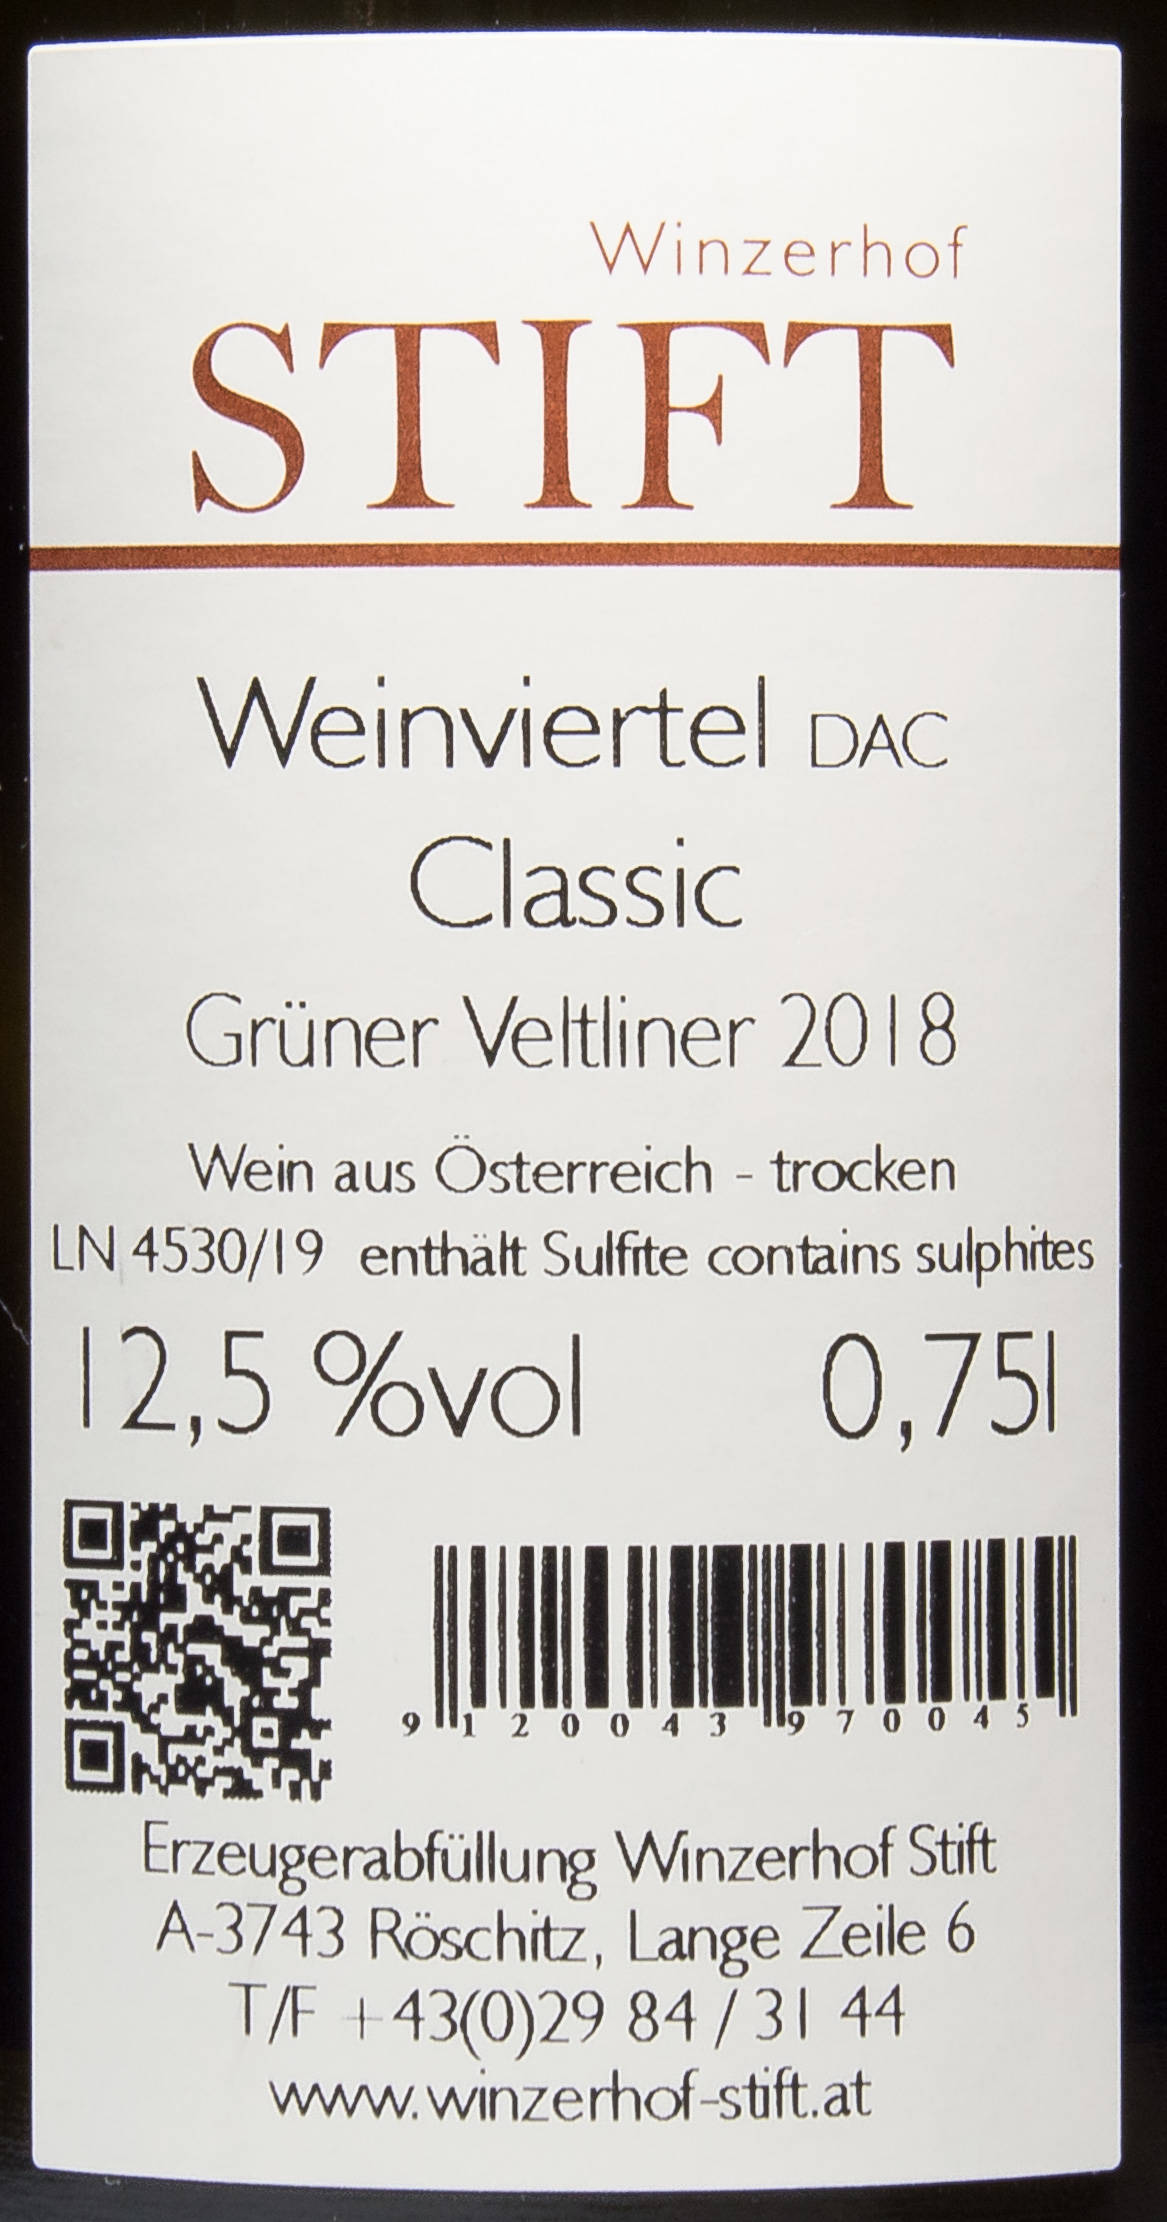 Etiketa Grüner Veltliner DAC Classic